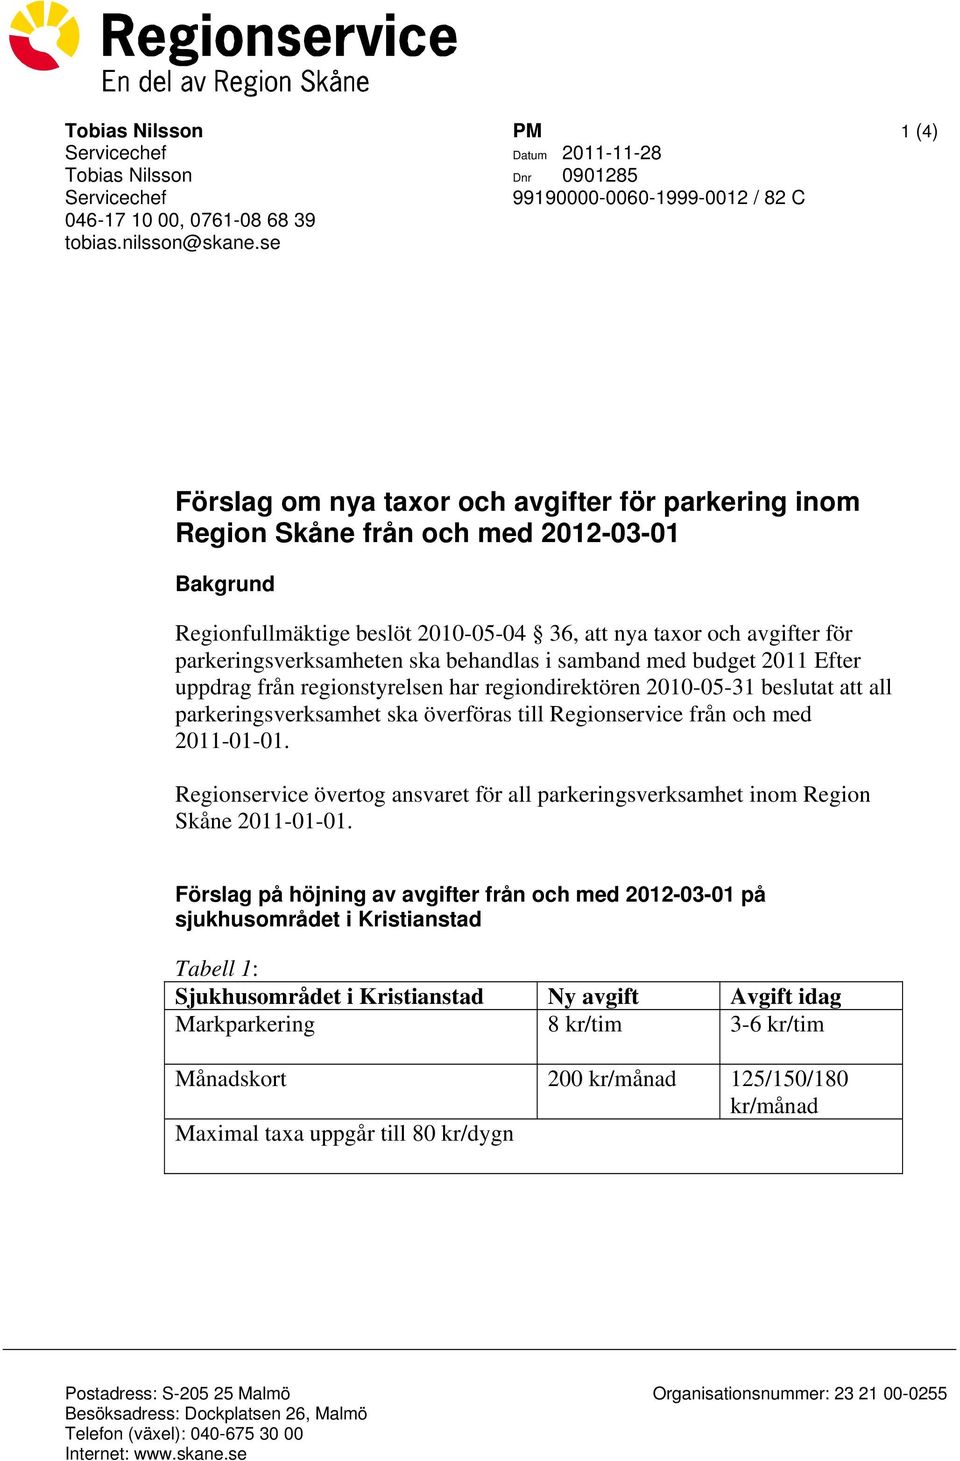 att nya taxor och avgifter för parkeringsverksamheten ska behandlas i samband med budget 2011 Efter uppdrag från regionstyrelsen har regiondirektören 2010-05-31 beslutat att all parkeringsverksamhet